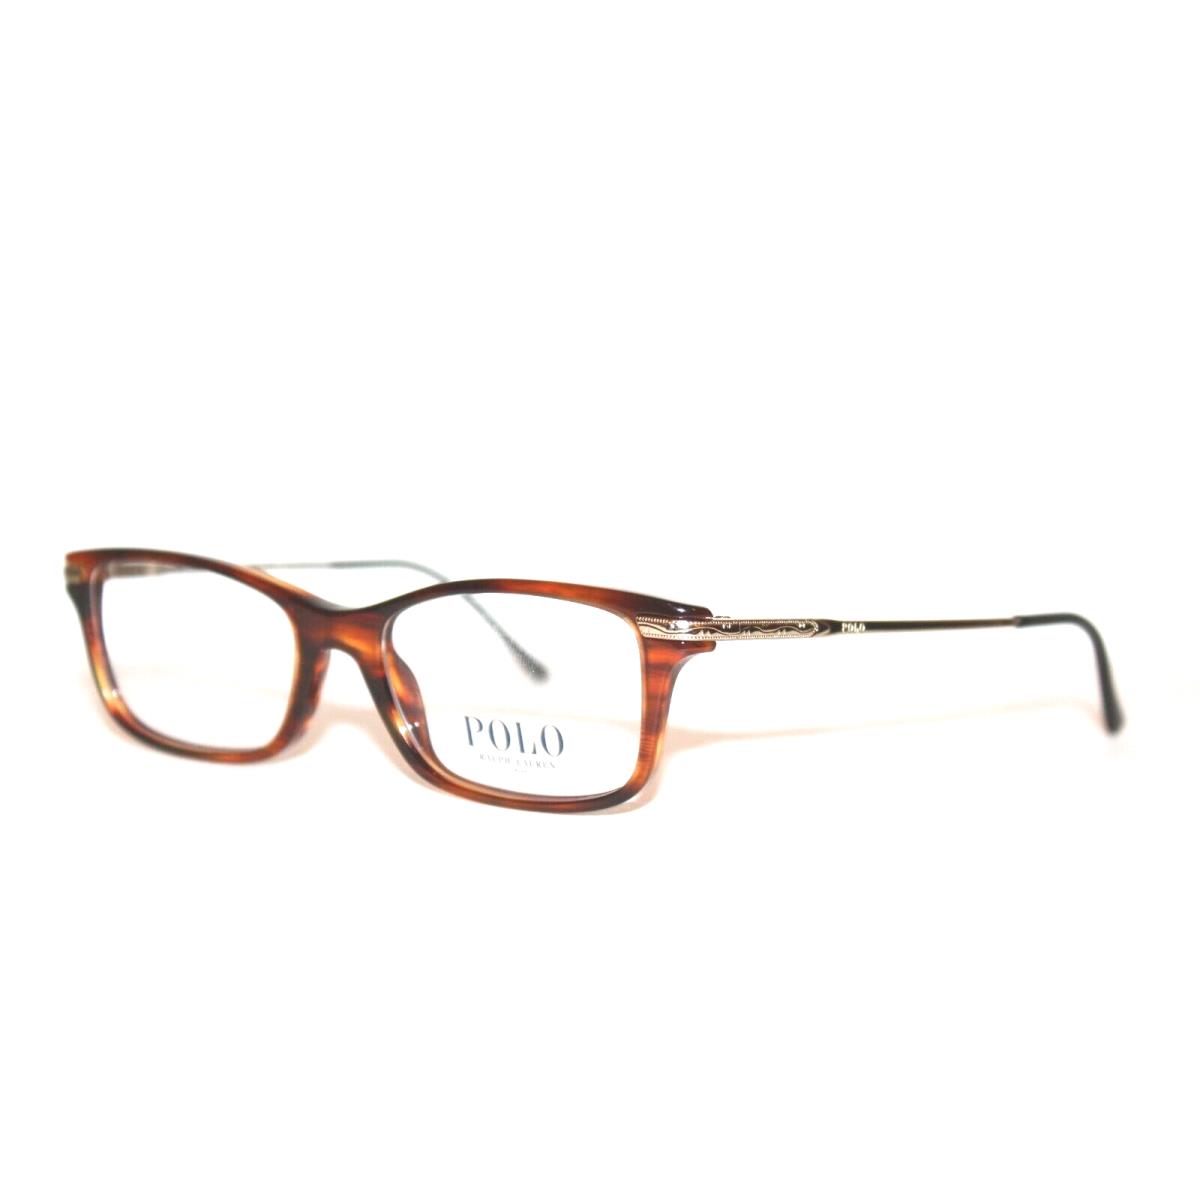 Polo Ralph Lauren PH2136 5007 Havana Eyeglasses 50-17-140 MM